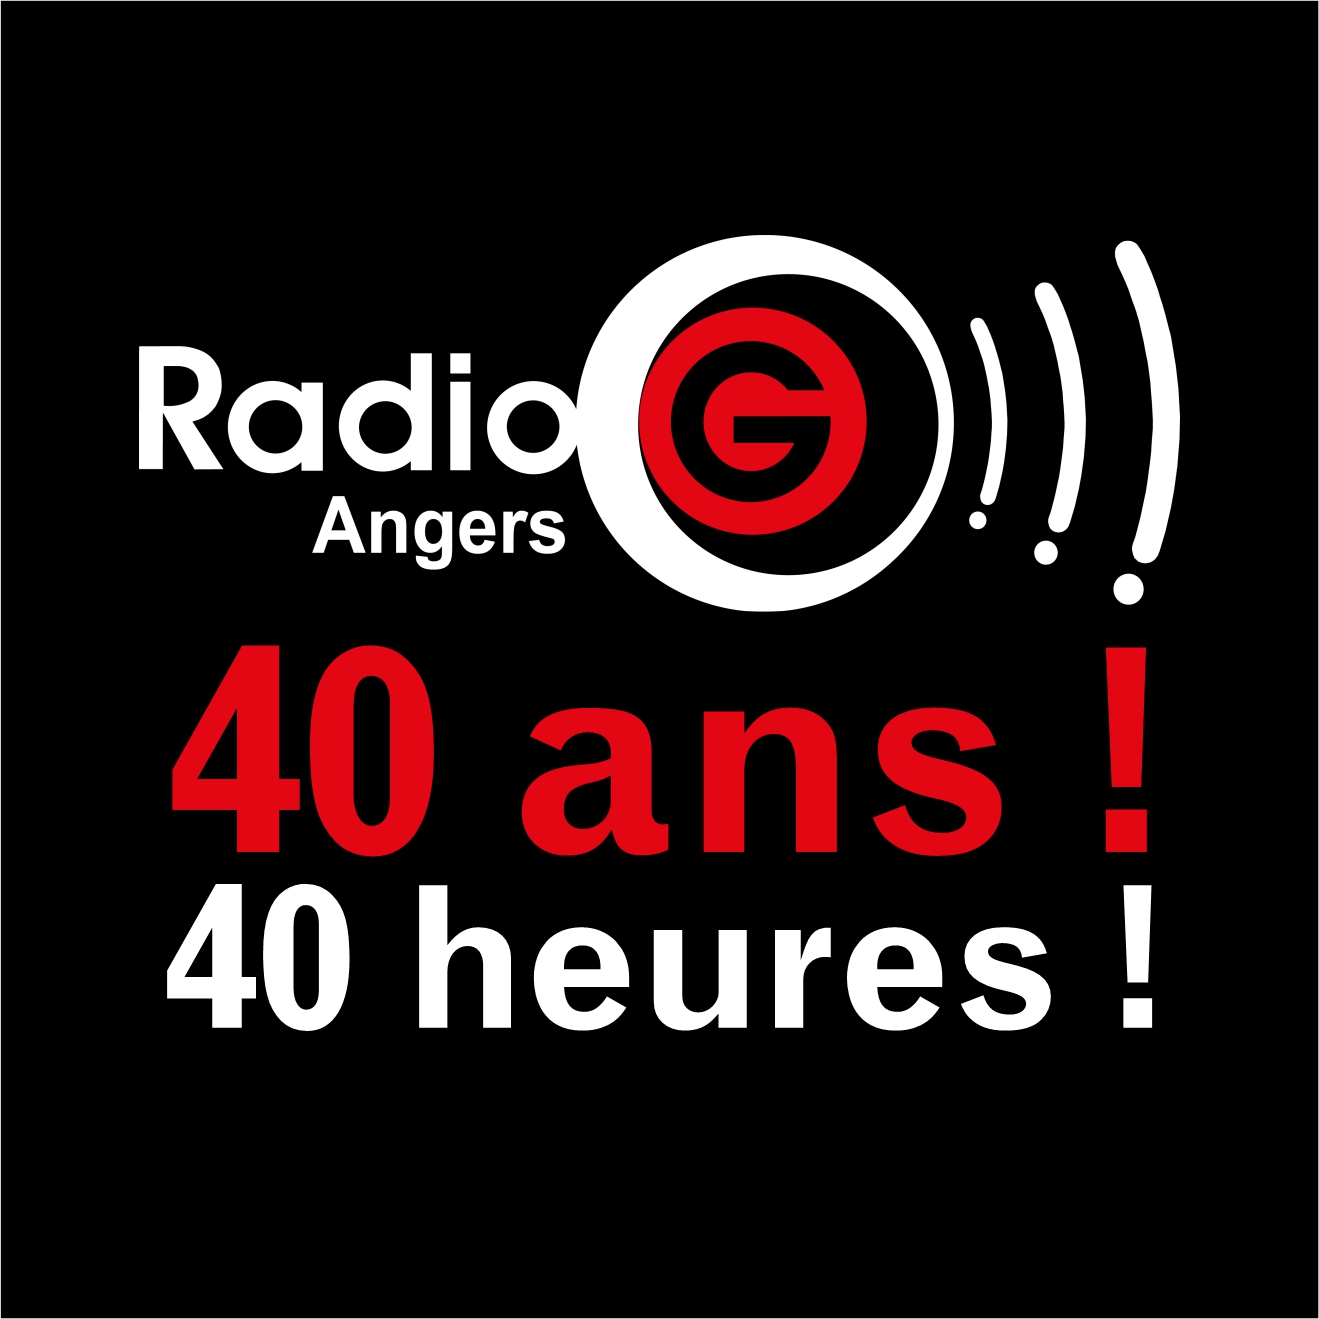 LFC fête les 40 ans de radio G le 23 10 2021 40 heures LFC fête les 40 ans de radio G le 23 10 2021